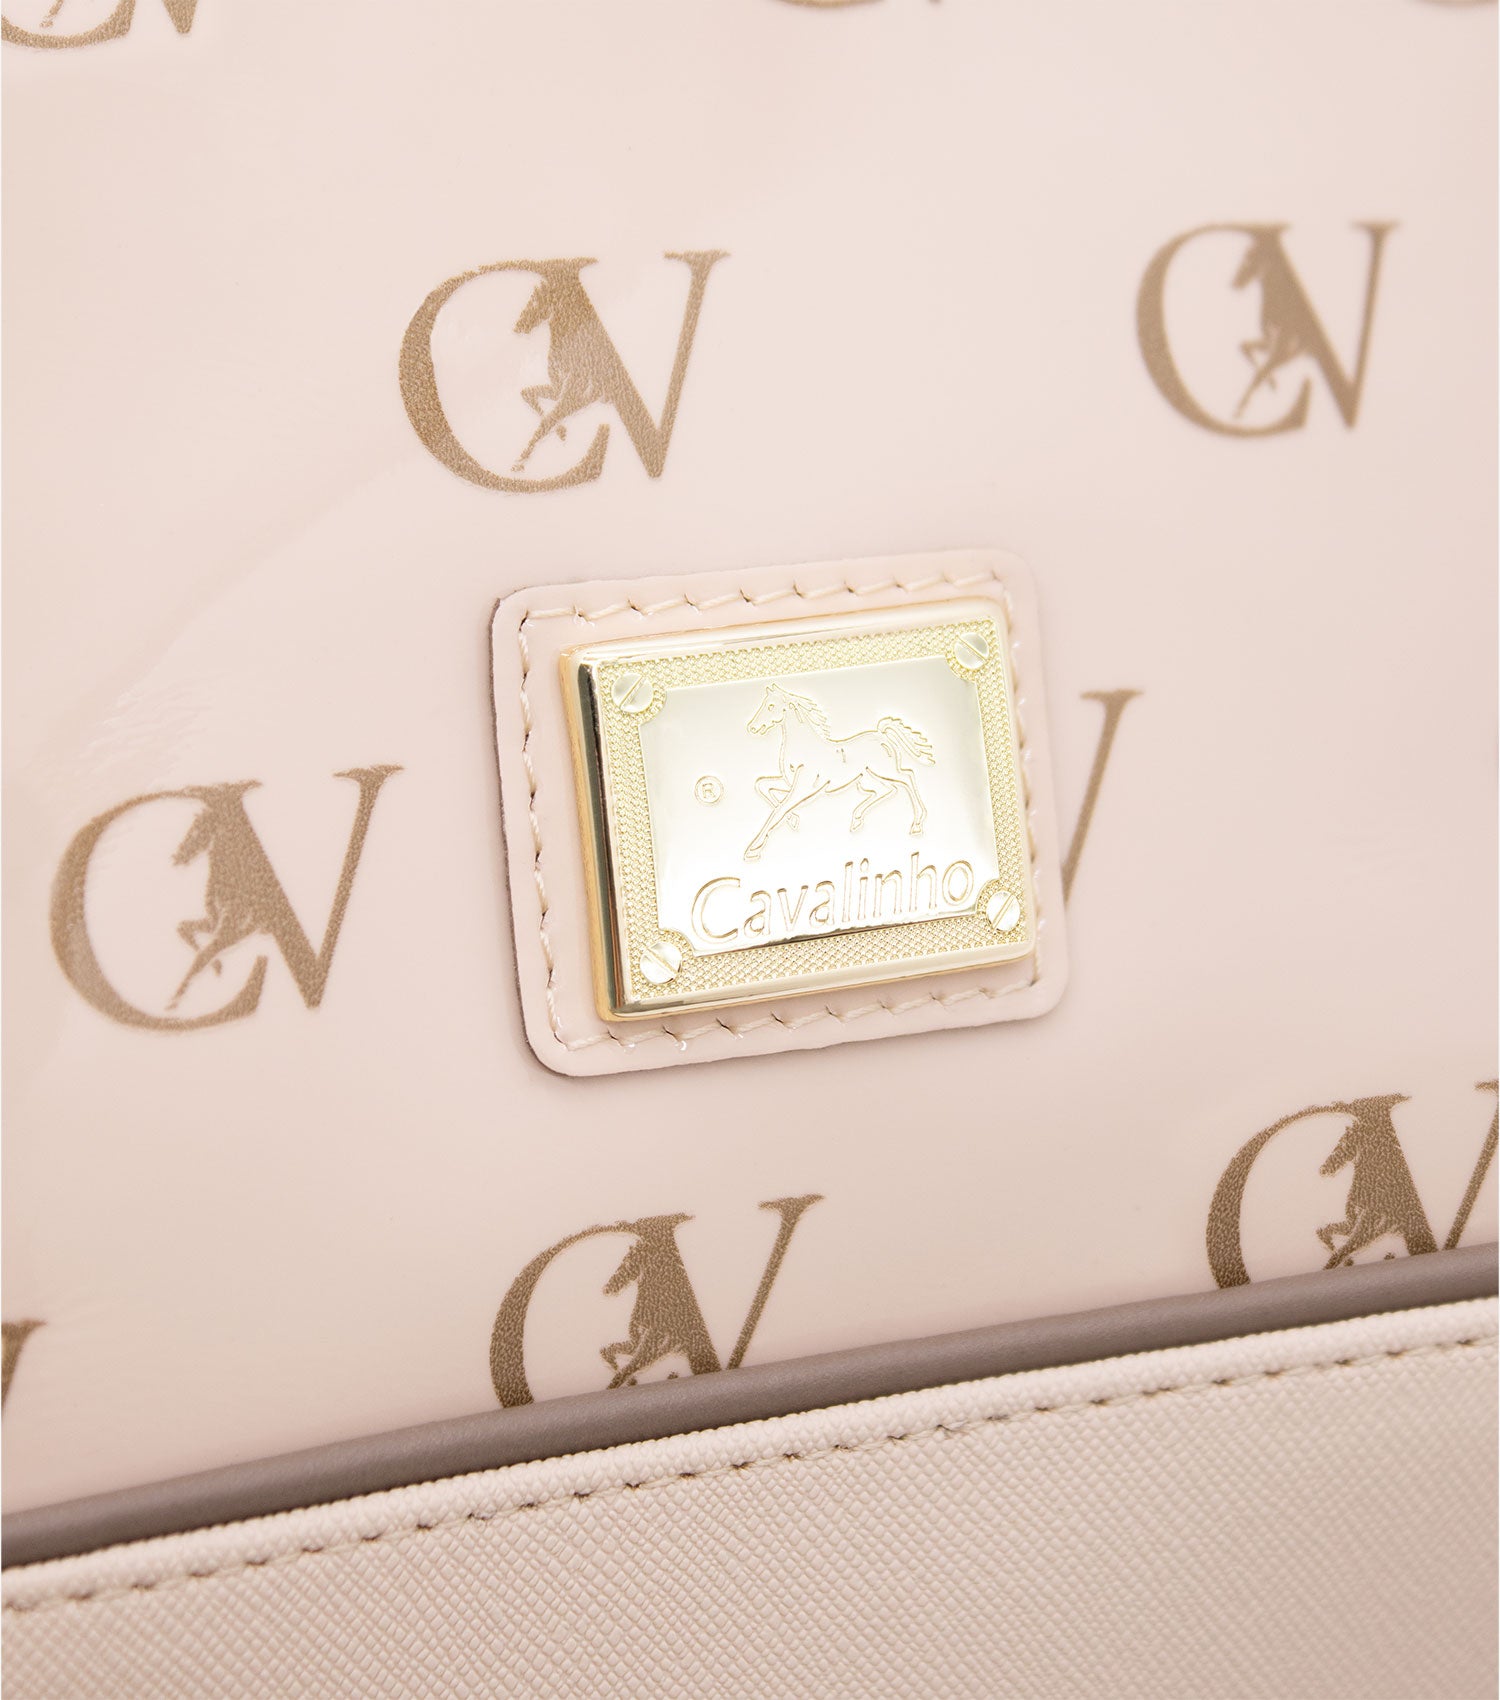 Cavalinho Signature Crossbody Bag SKU 18740005.31 #color_sand / beige